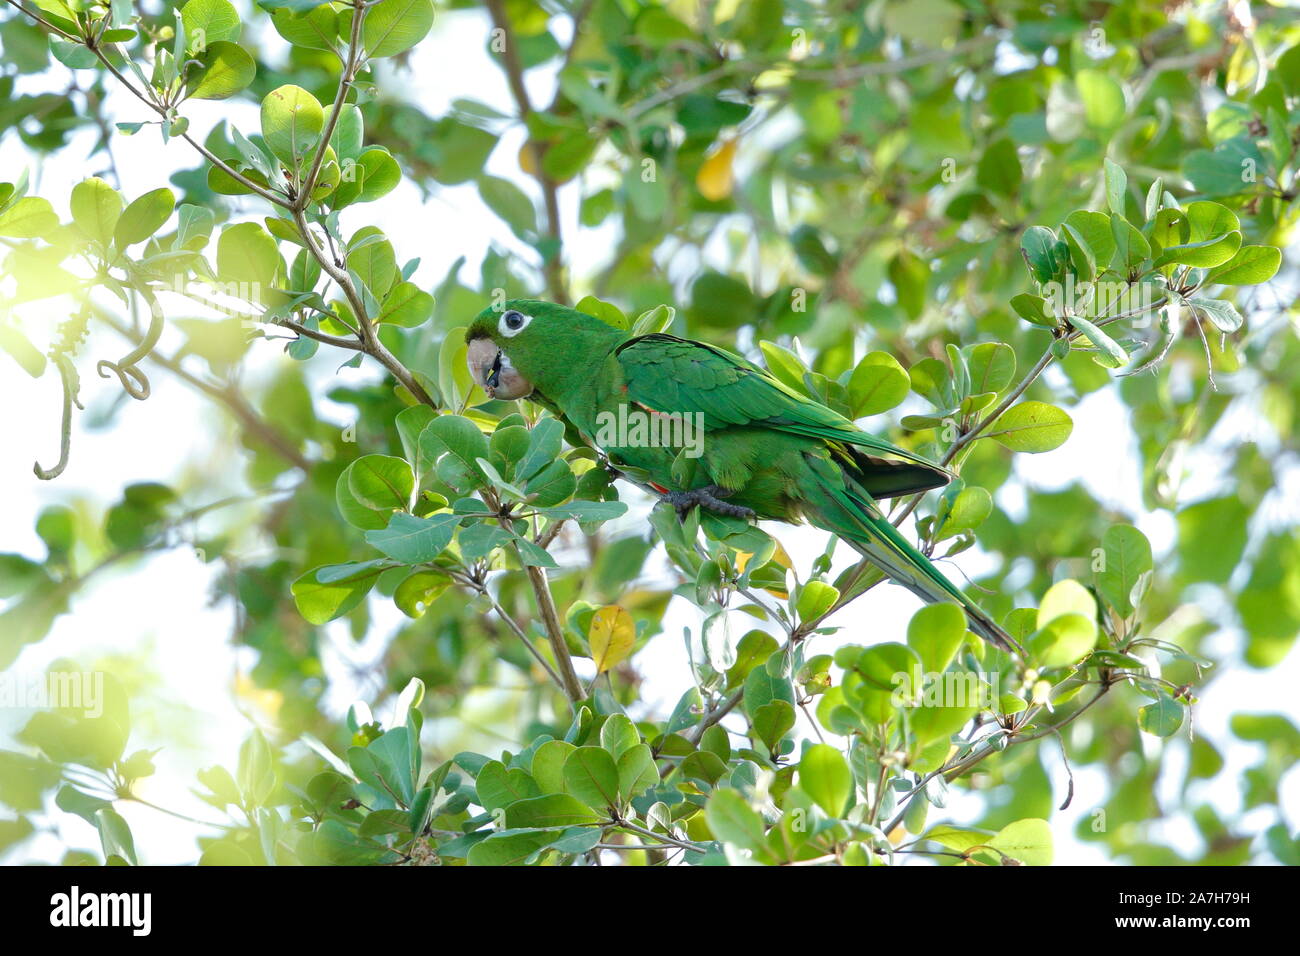 Il parrocchetto Hispaniolan o perico è una specie di pappagallo della famiglia Psittacidae. Foto Stock